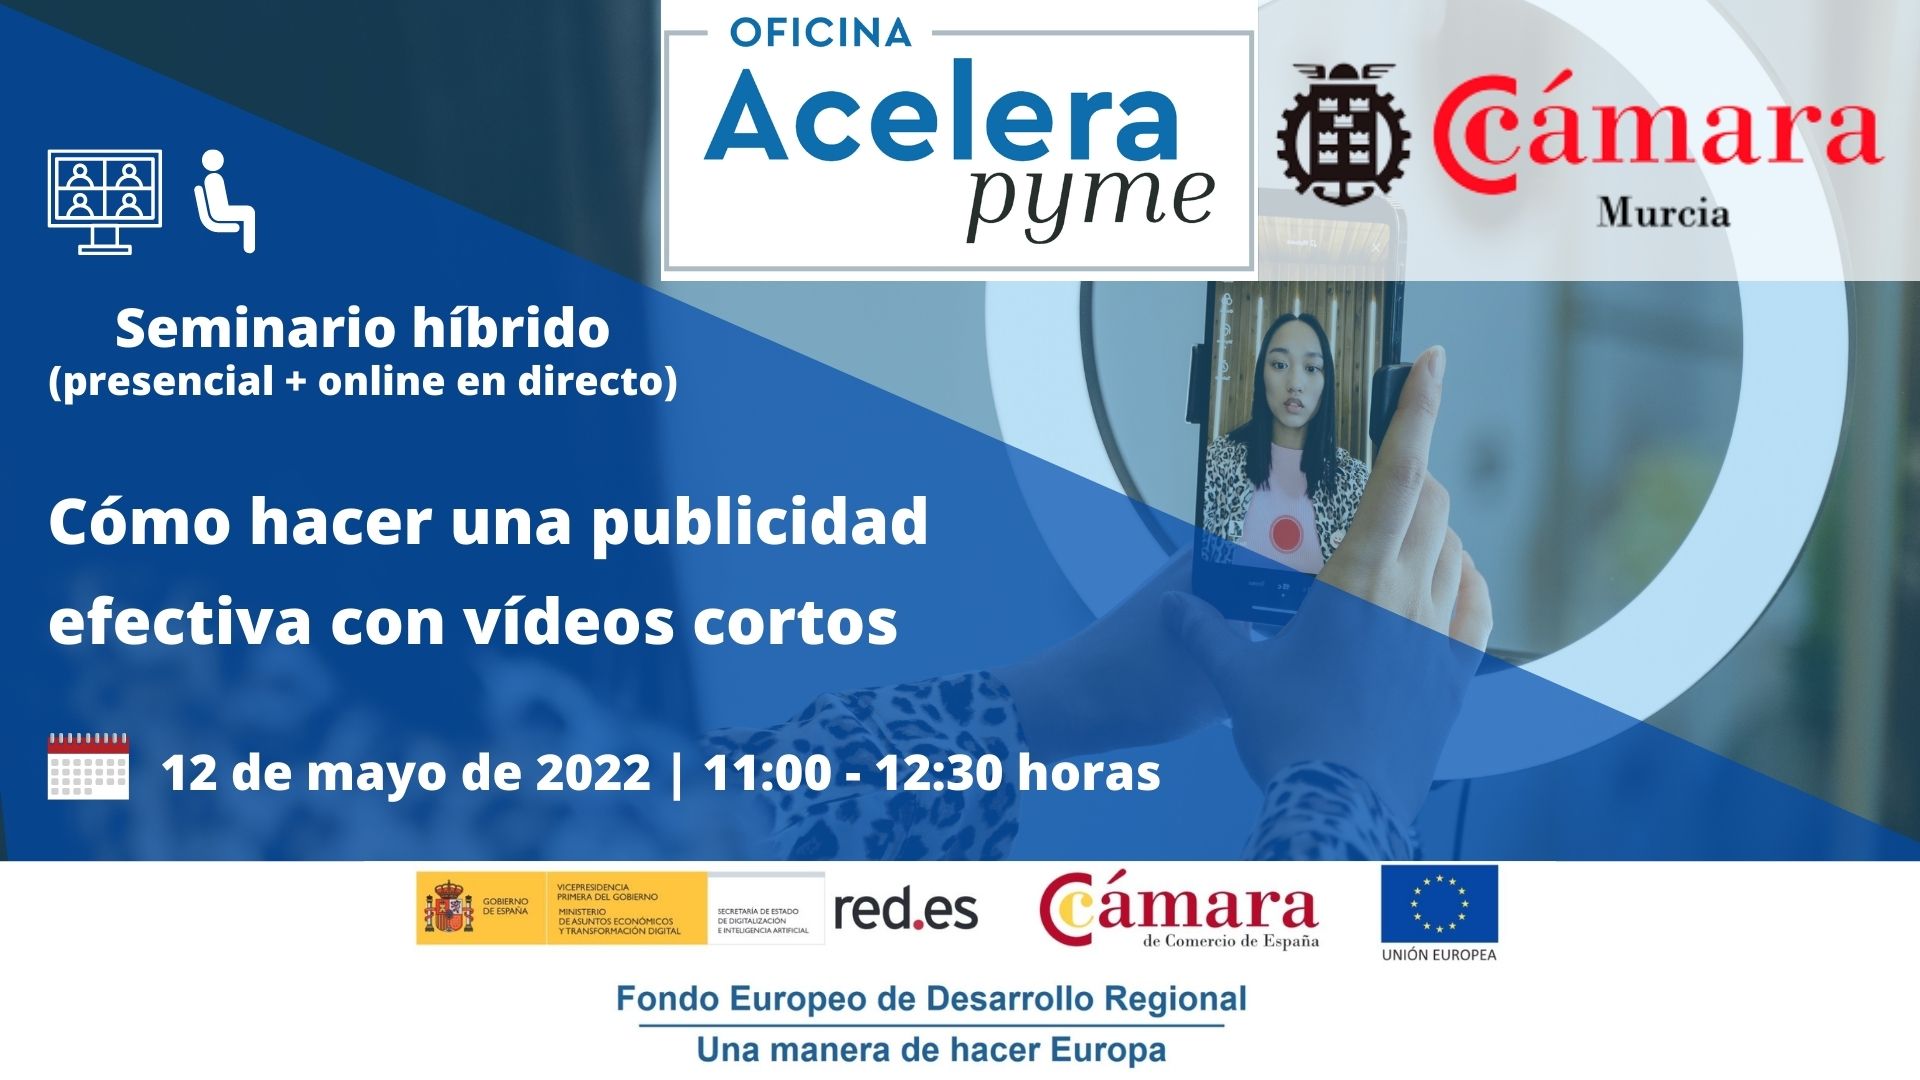 Seminario | Cómo hacer una publicidad efectiva con vídeos cortos | Cámara de Comercio de Murcia | Oficina Acelera Pyme